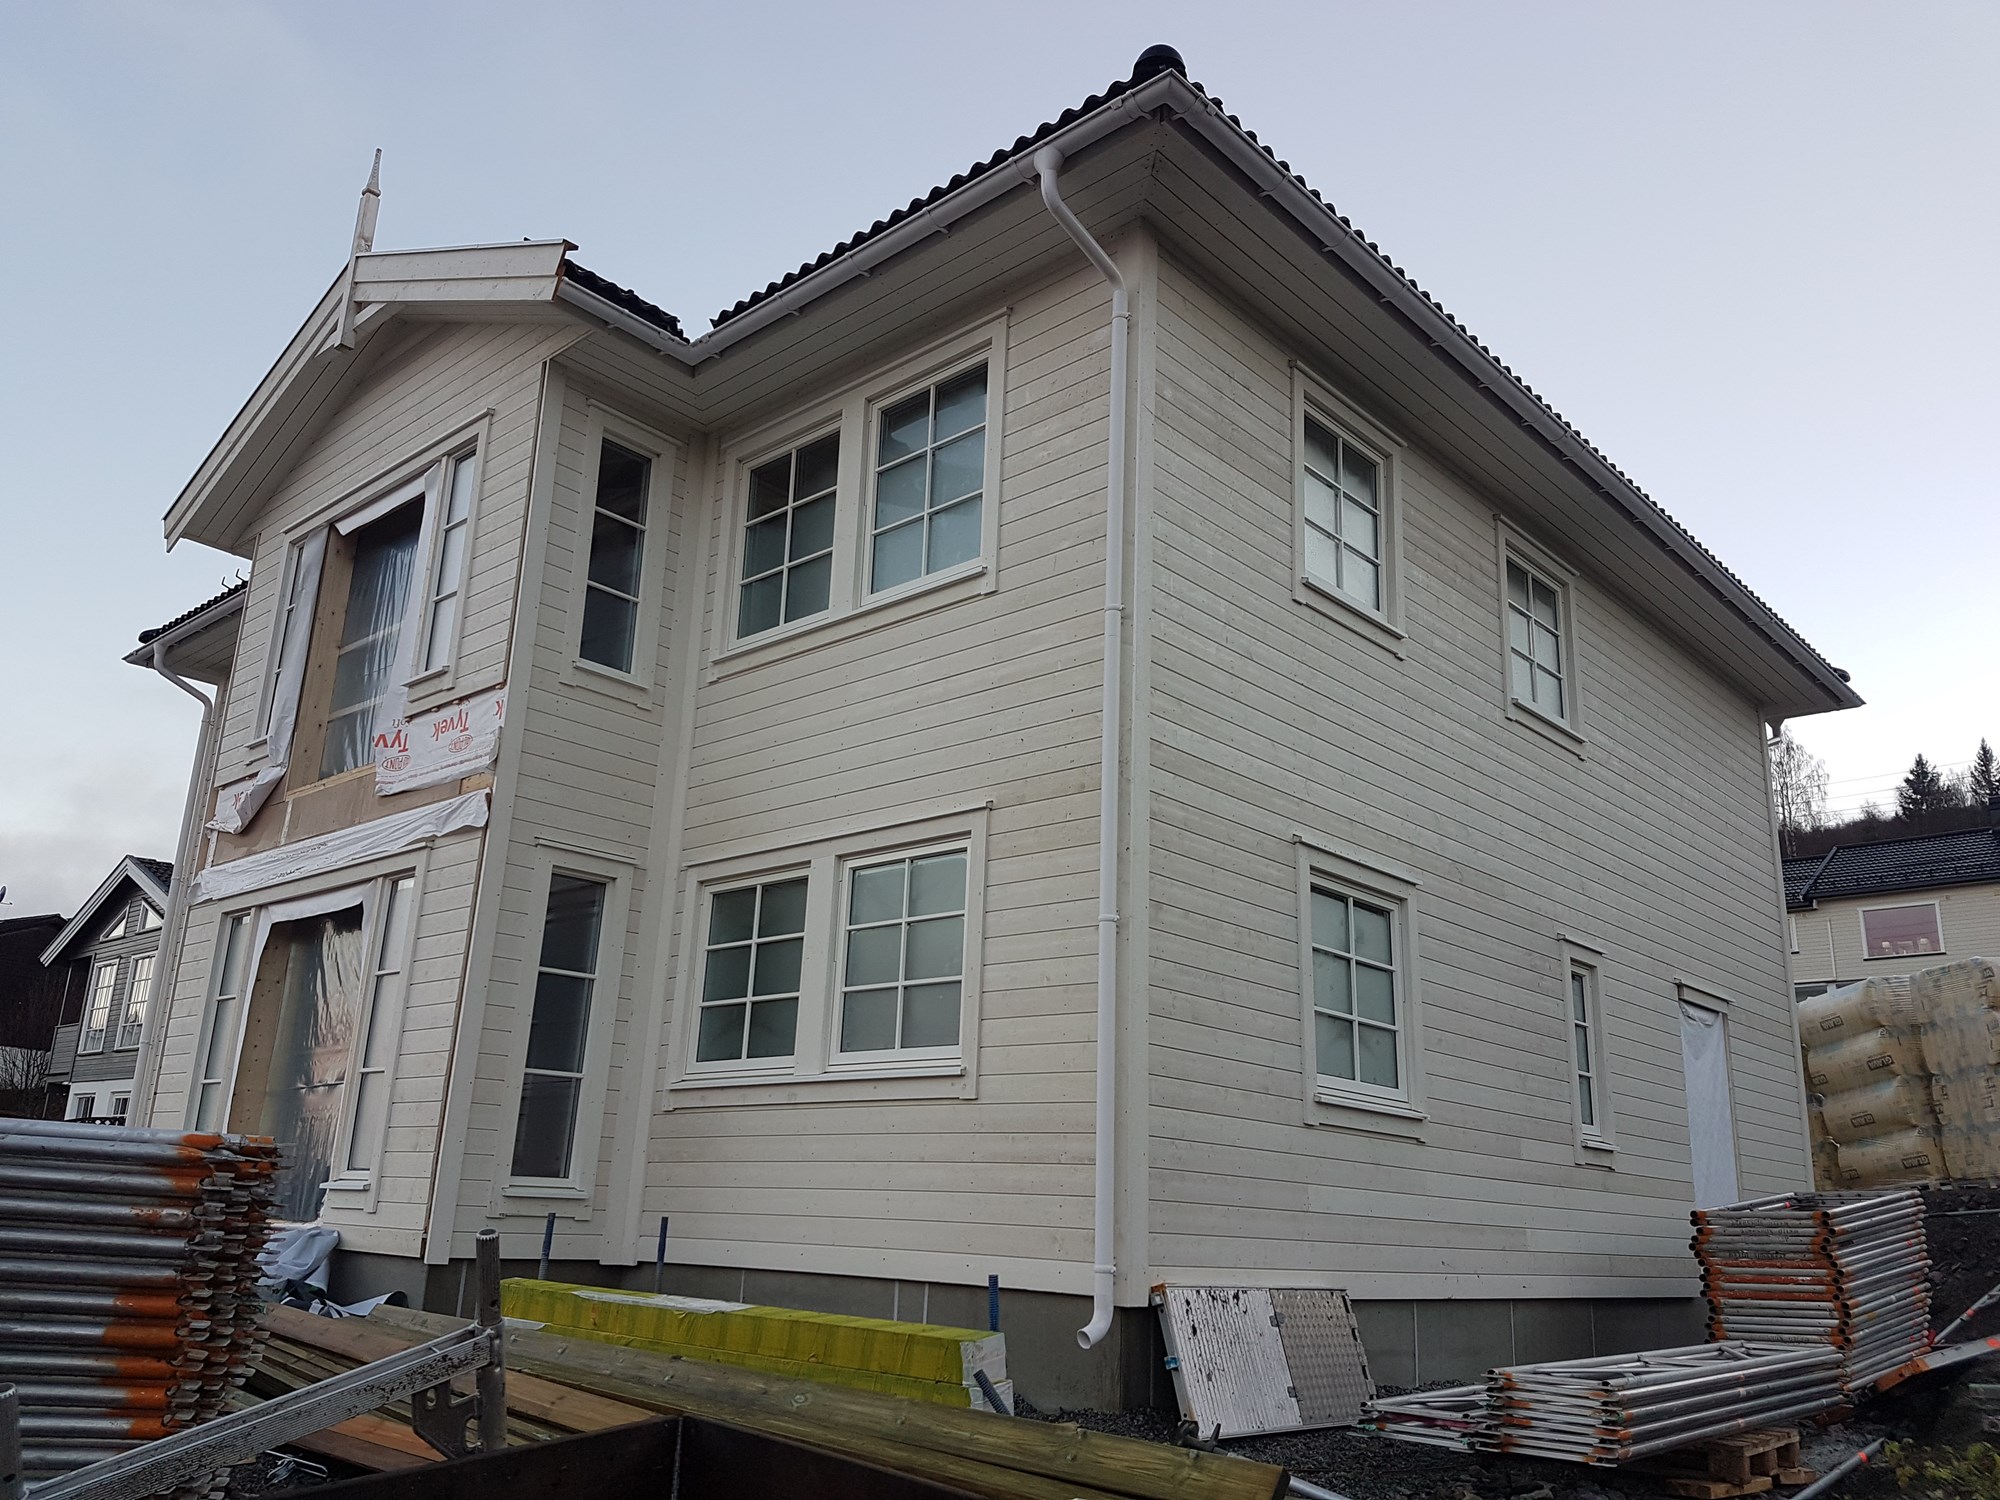 Bygger nytt hus: abchus Adele i Drammen -  - Michael Scofield